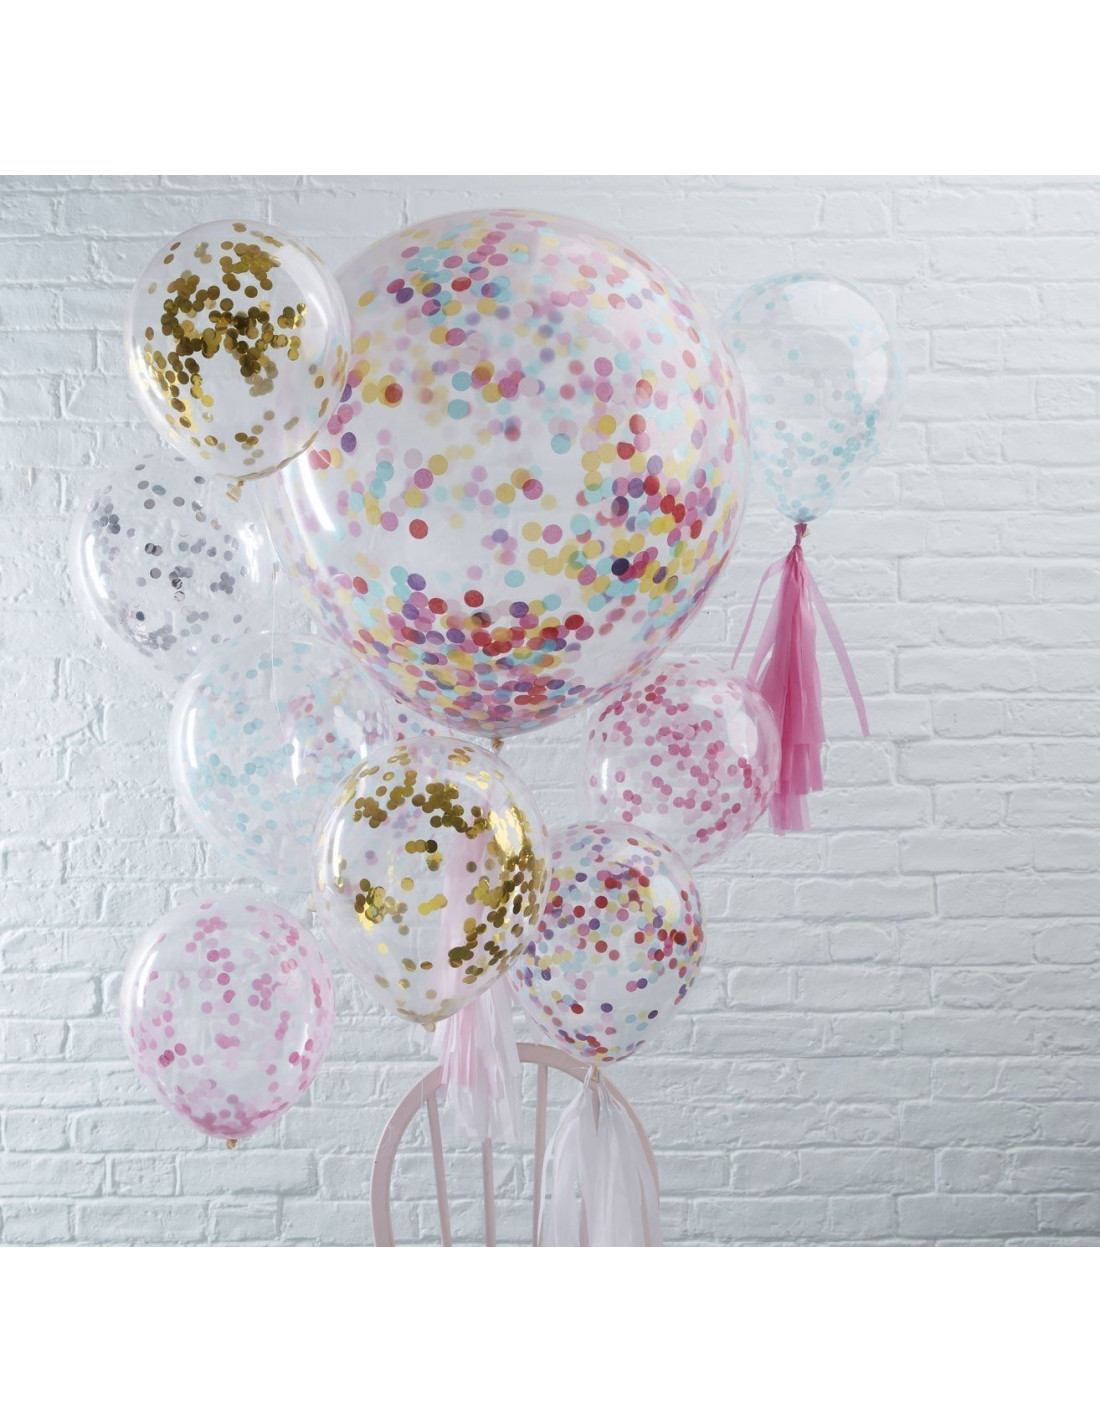 5 Ballons Transparents avec Confettis Rose Gold à l'intérieur